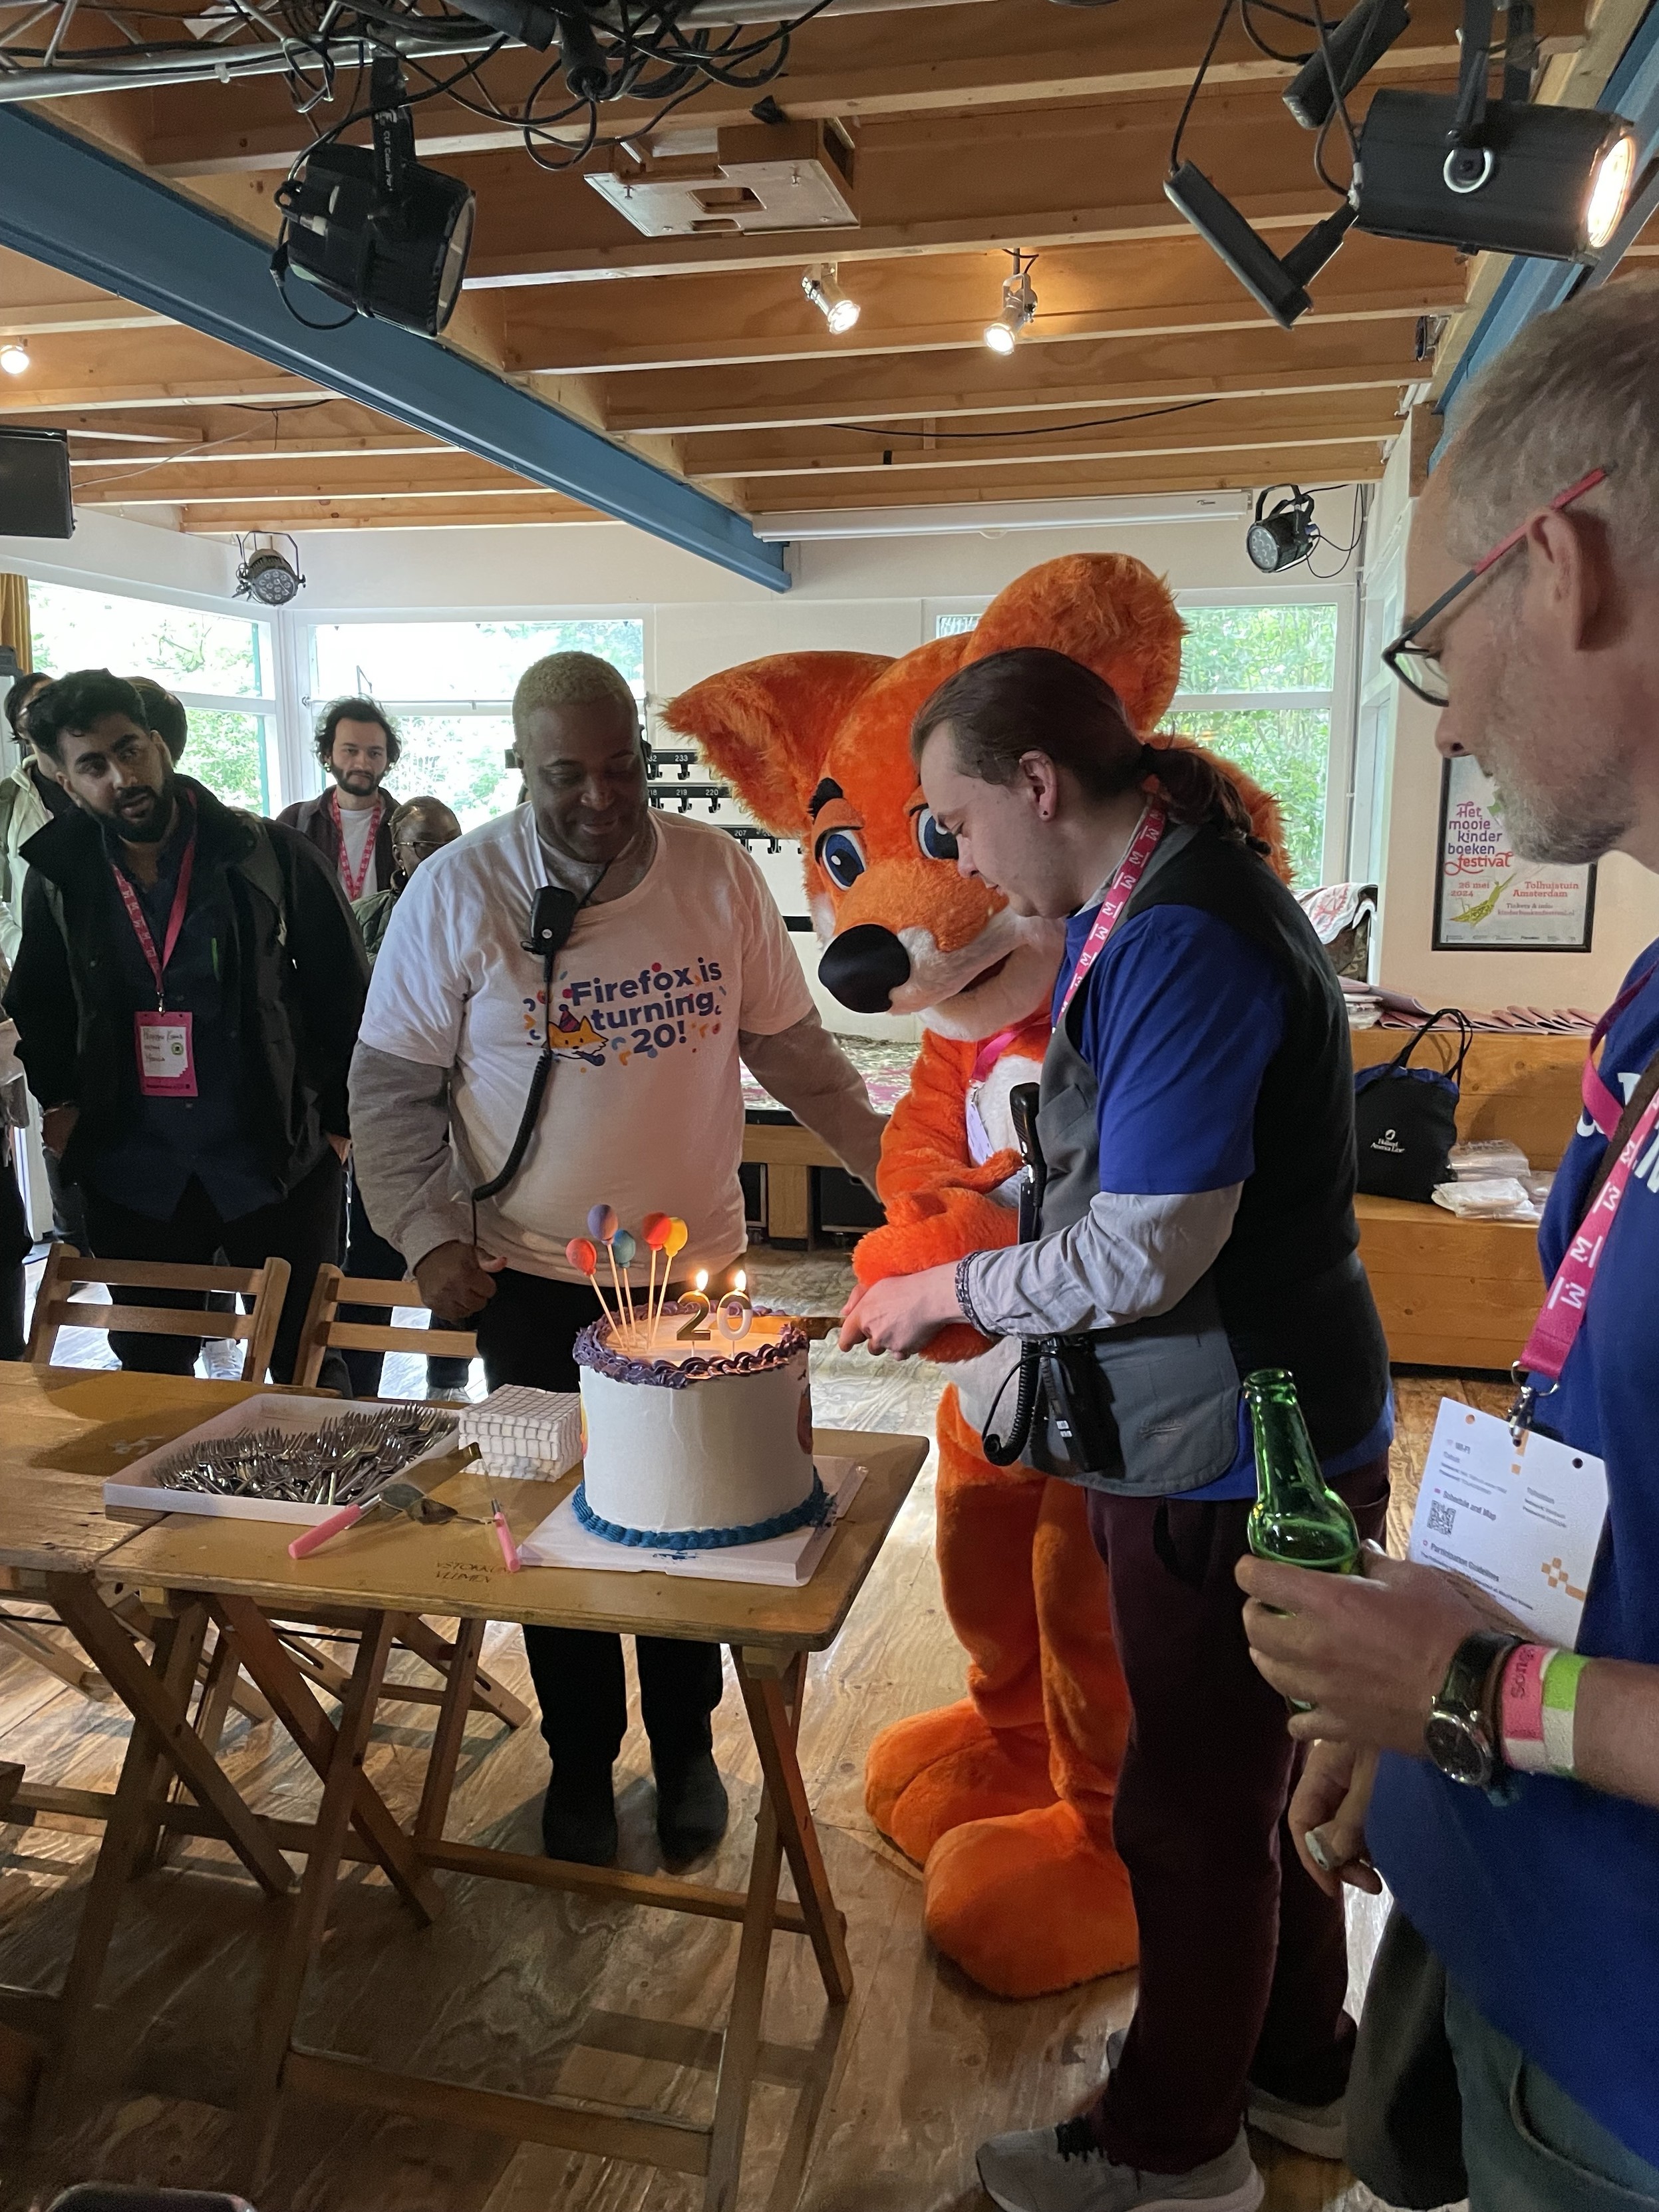 Foxie cutting their 20 yo birthday cake